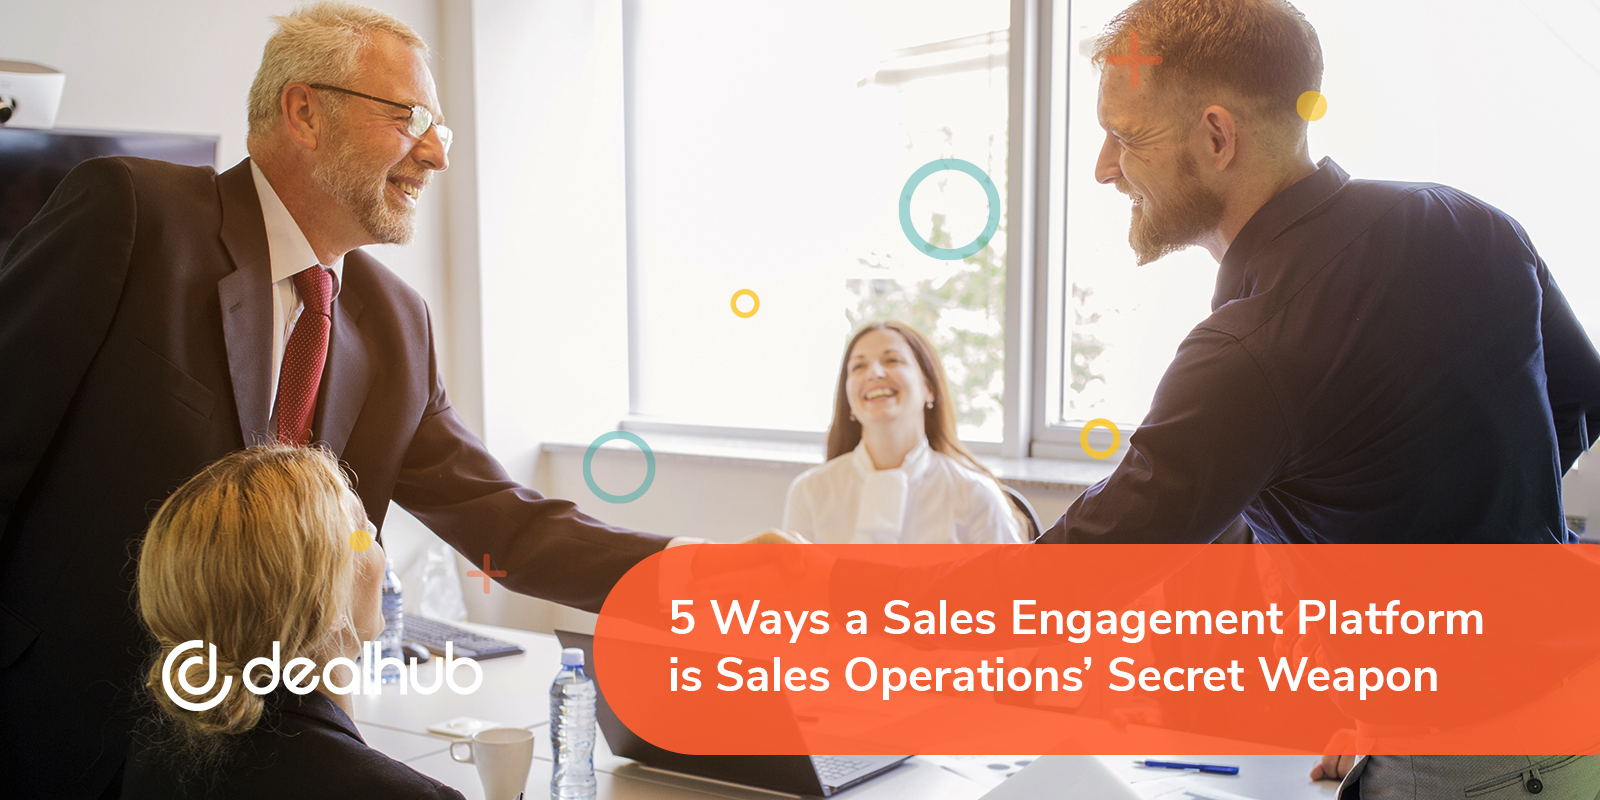 Sales Engagement Platform Sales Operations’ Secret Weapon